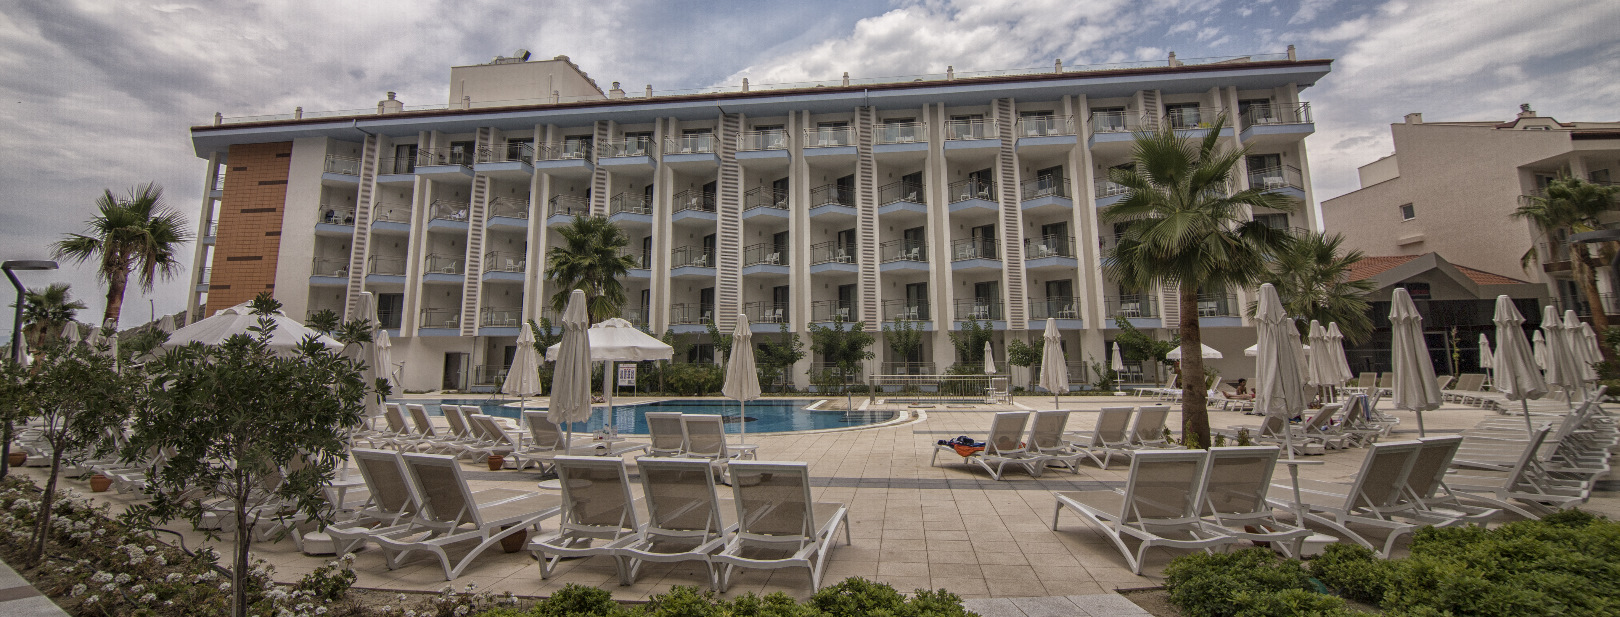 Turquie - Izmir - Ramada Hotel & Suite 4*